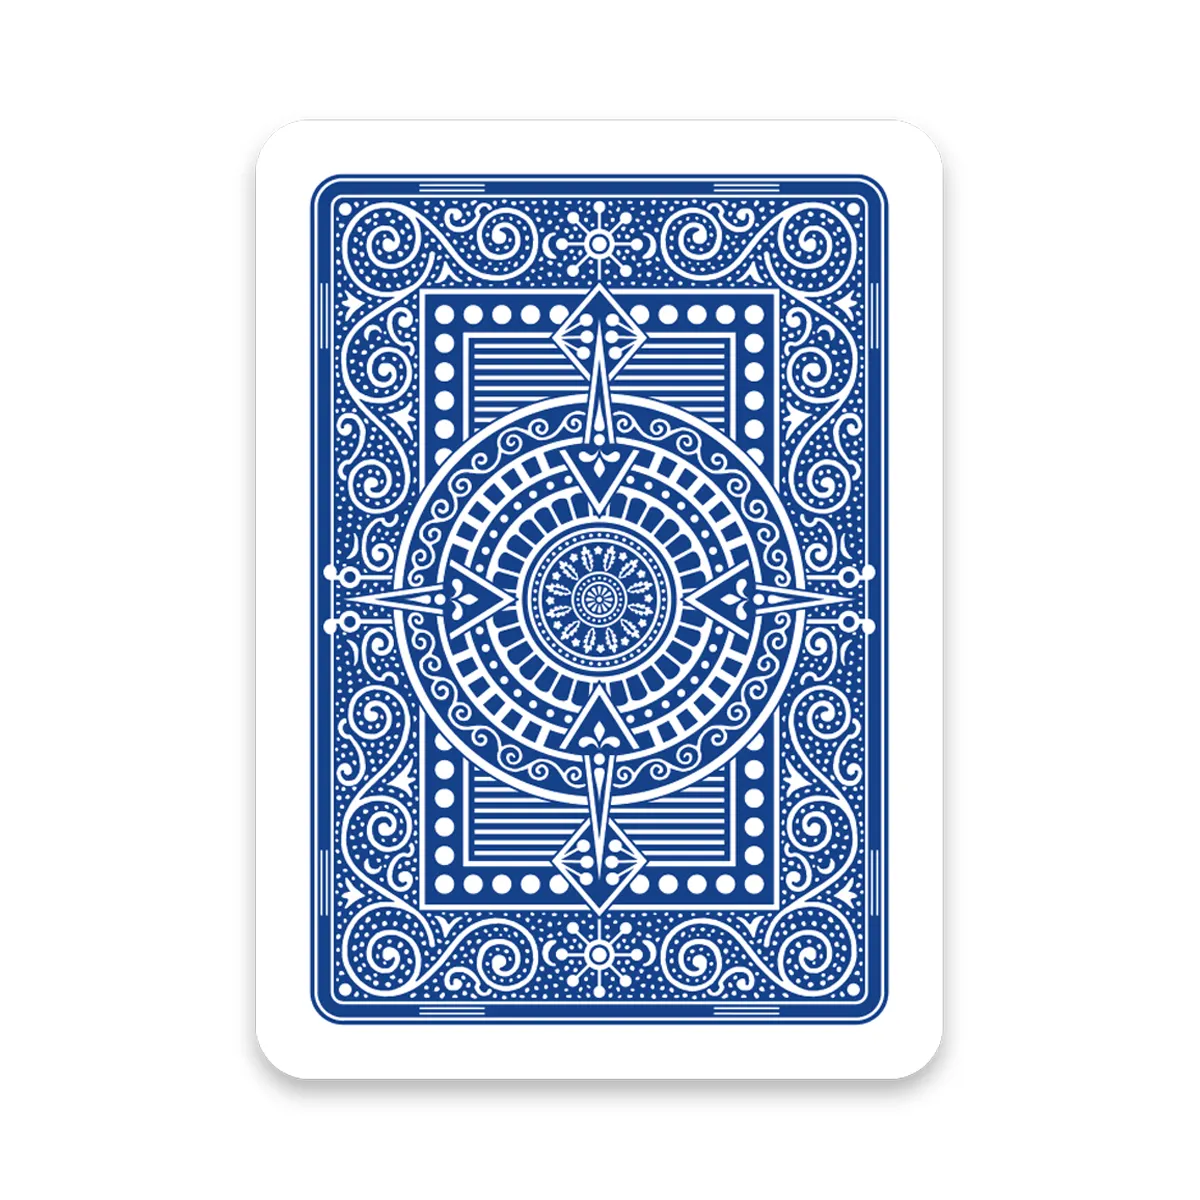 Yüksek kaliteli İtalyan Modiano teksas Poker 2 Jumbo endeksi PVC iskambil kartları poker oyunu için mavi tek güverte